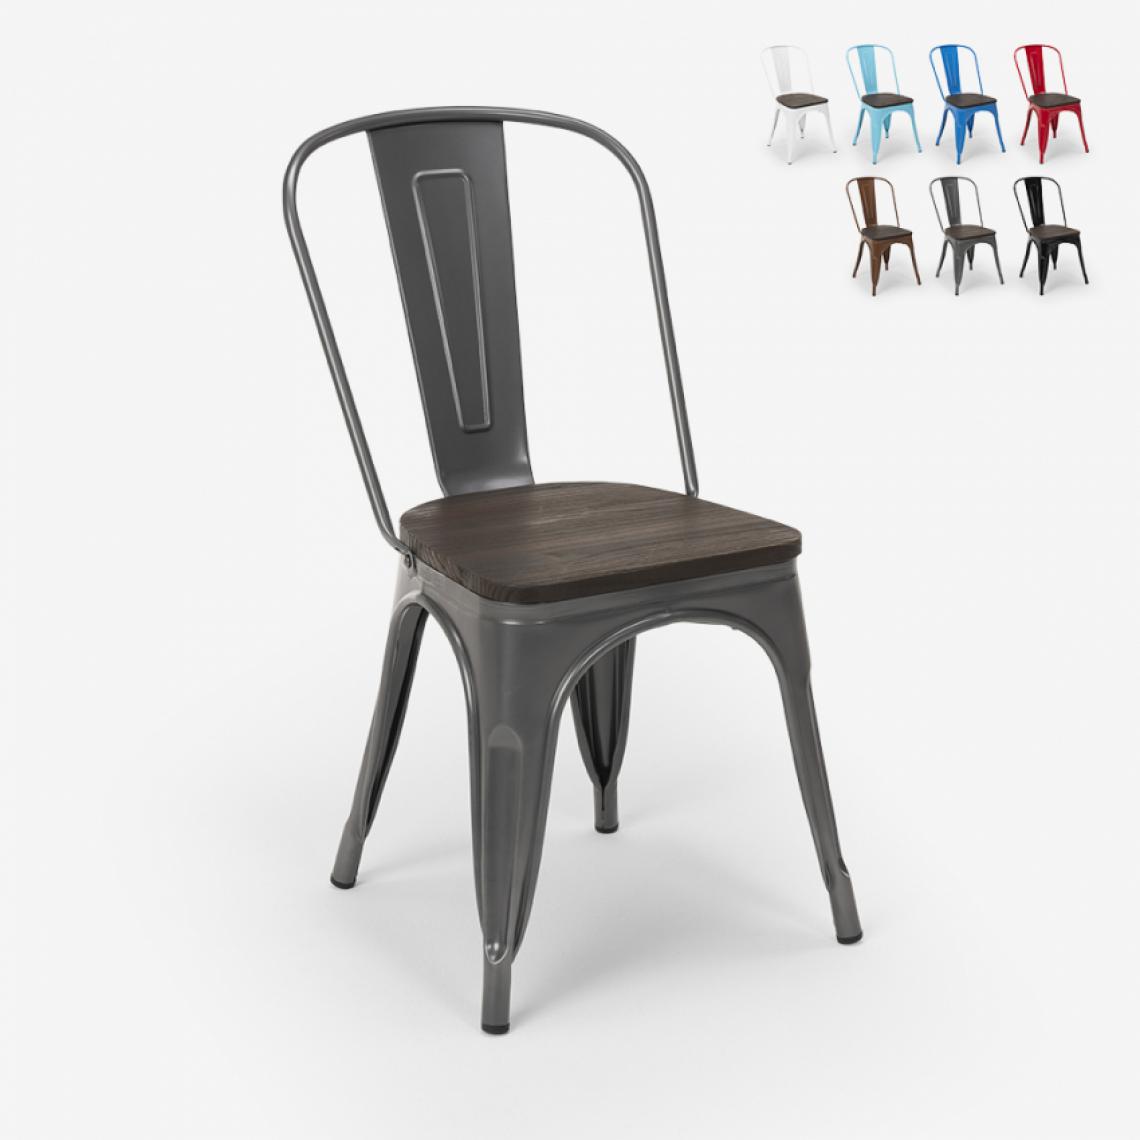 Ahd Amazing Home Design - Chaises industrielles en bois et acier Tolix pour cuisine et bar Steel Wood, Couleur: Gris foncé - Chaises